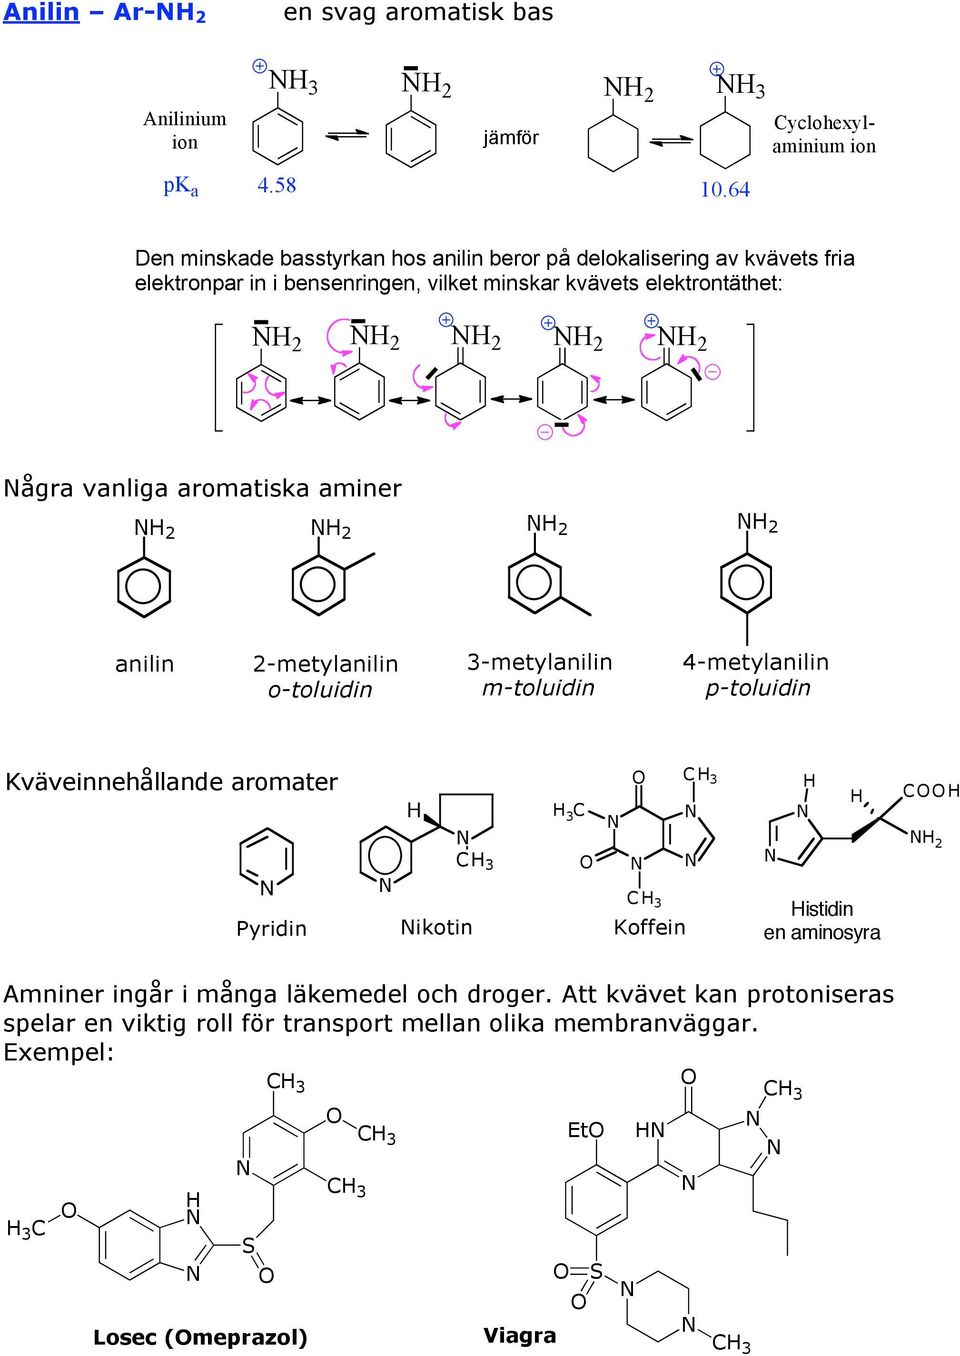 ågra vanliga aromatiska aminer 2 2 2 2 anilin 2-metylanilin o-toluidin 3-metylanilin m-toluidin 4-metylanilin p-toluidin Kväveinnehållande aromater Pyridin